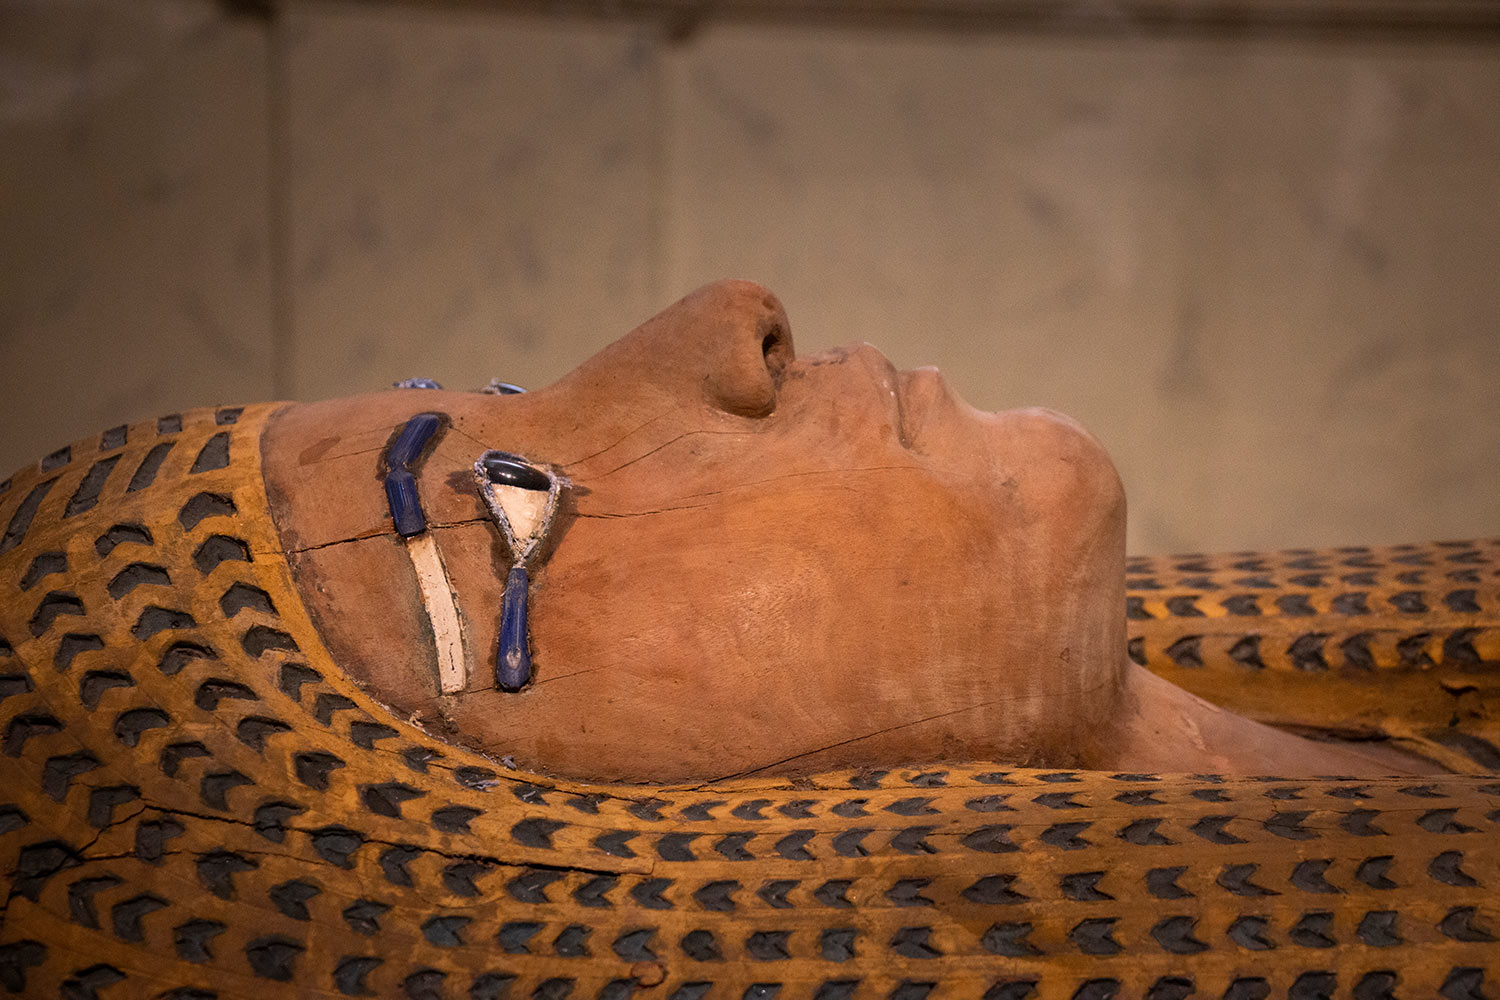 Sarcophage, Musée égyptien, Le Caire, Égypte / Sarcophage, Egyptian Museum, Cairo, Egypt